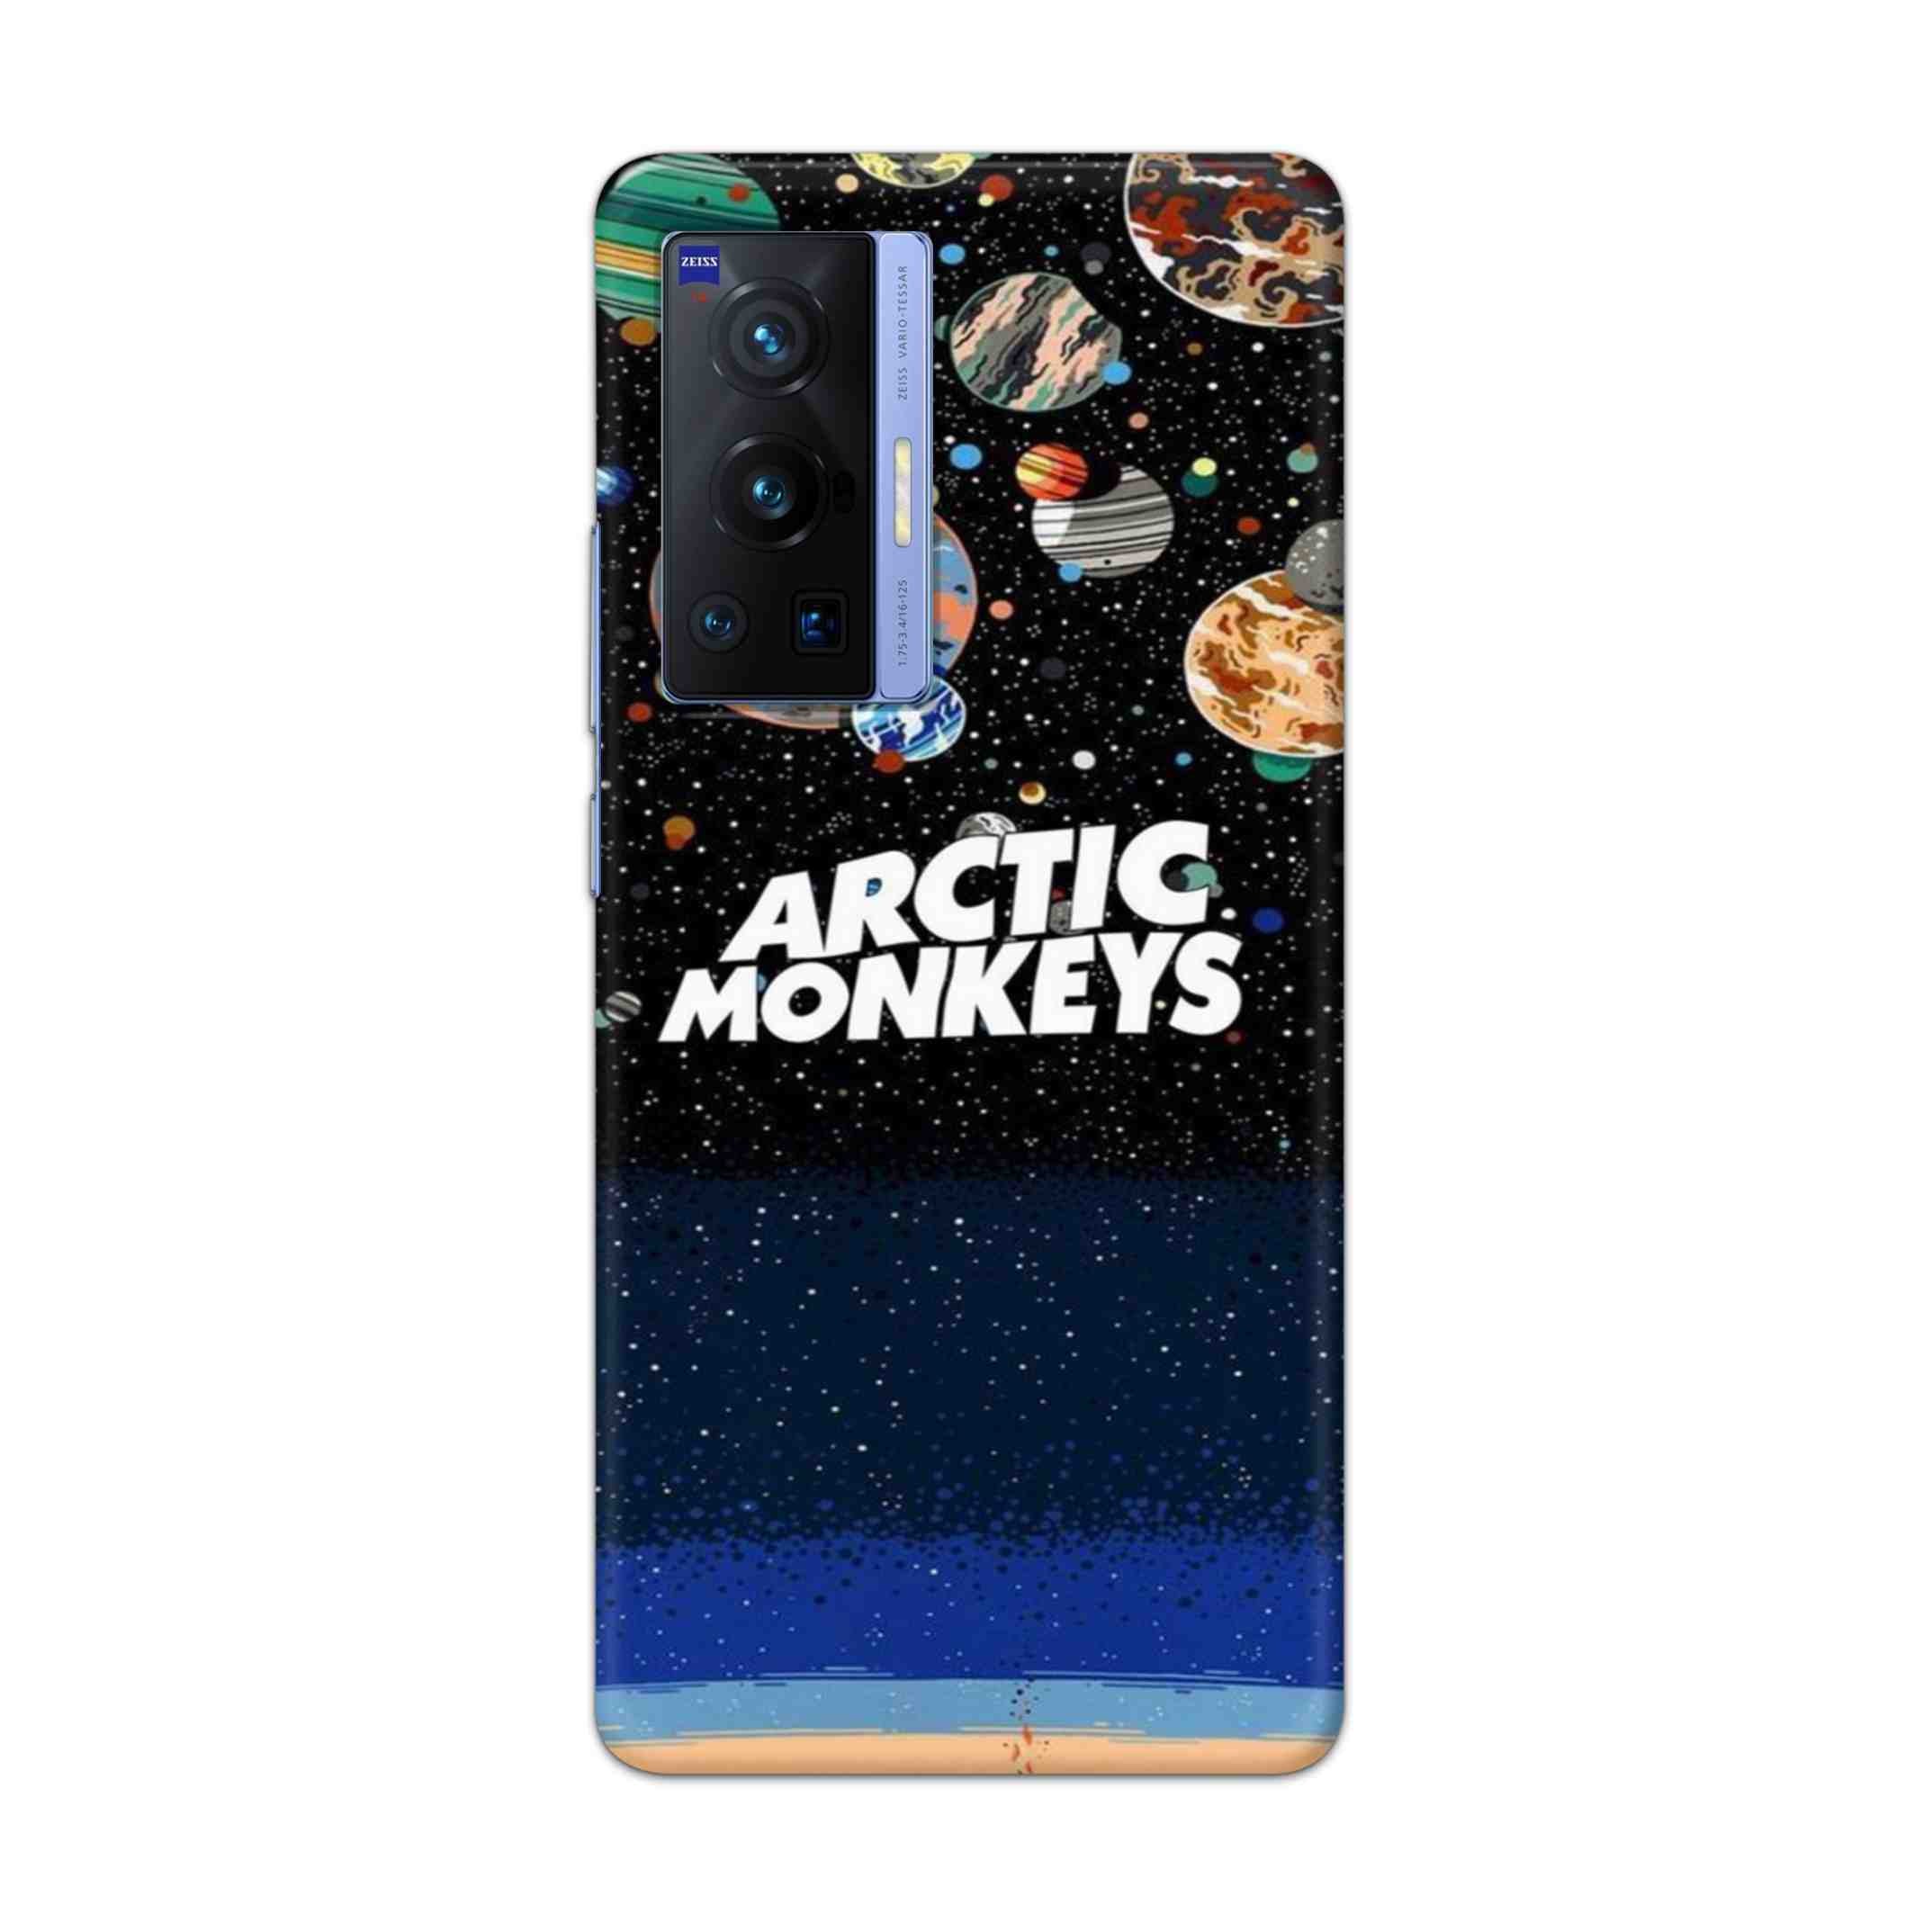 Buy Artic Monkeys Hard Back Mobile Phone Case Cover For Vivo X70 Pro Online